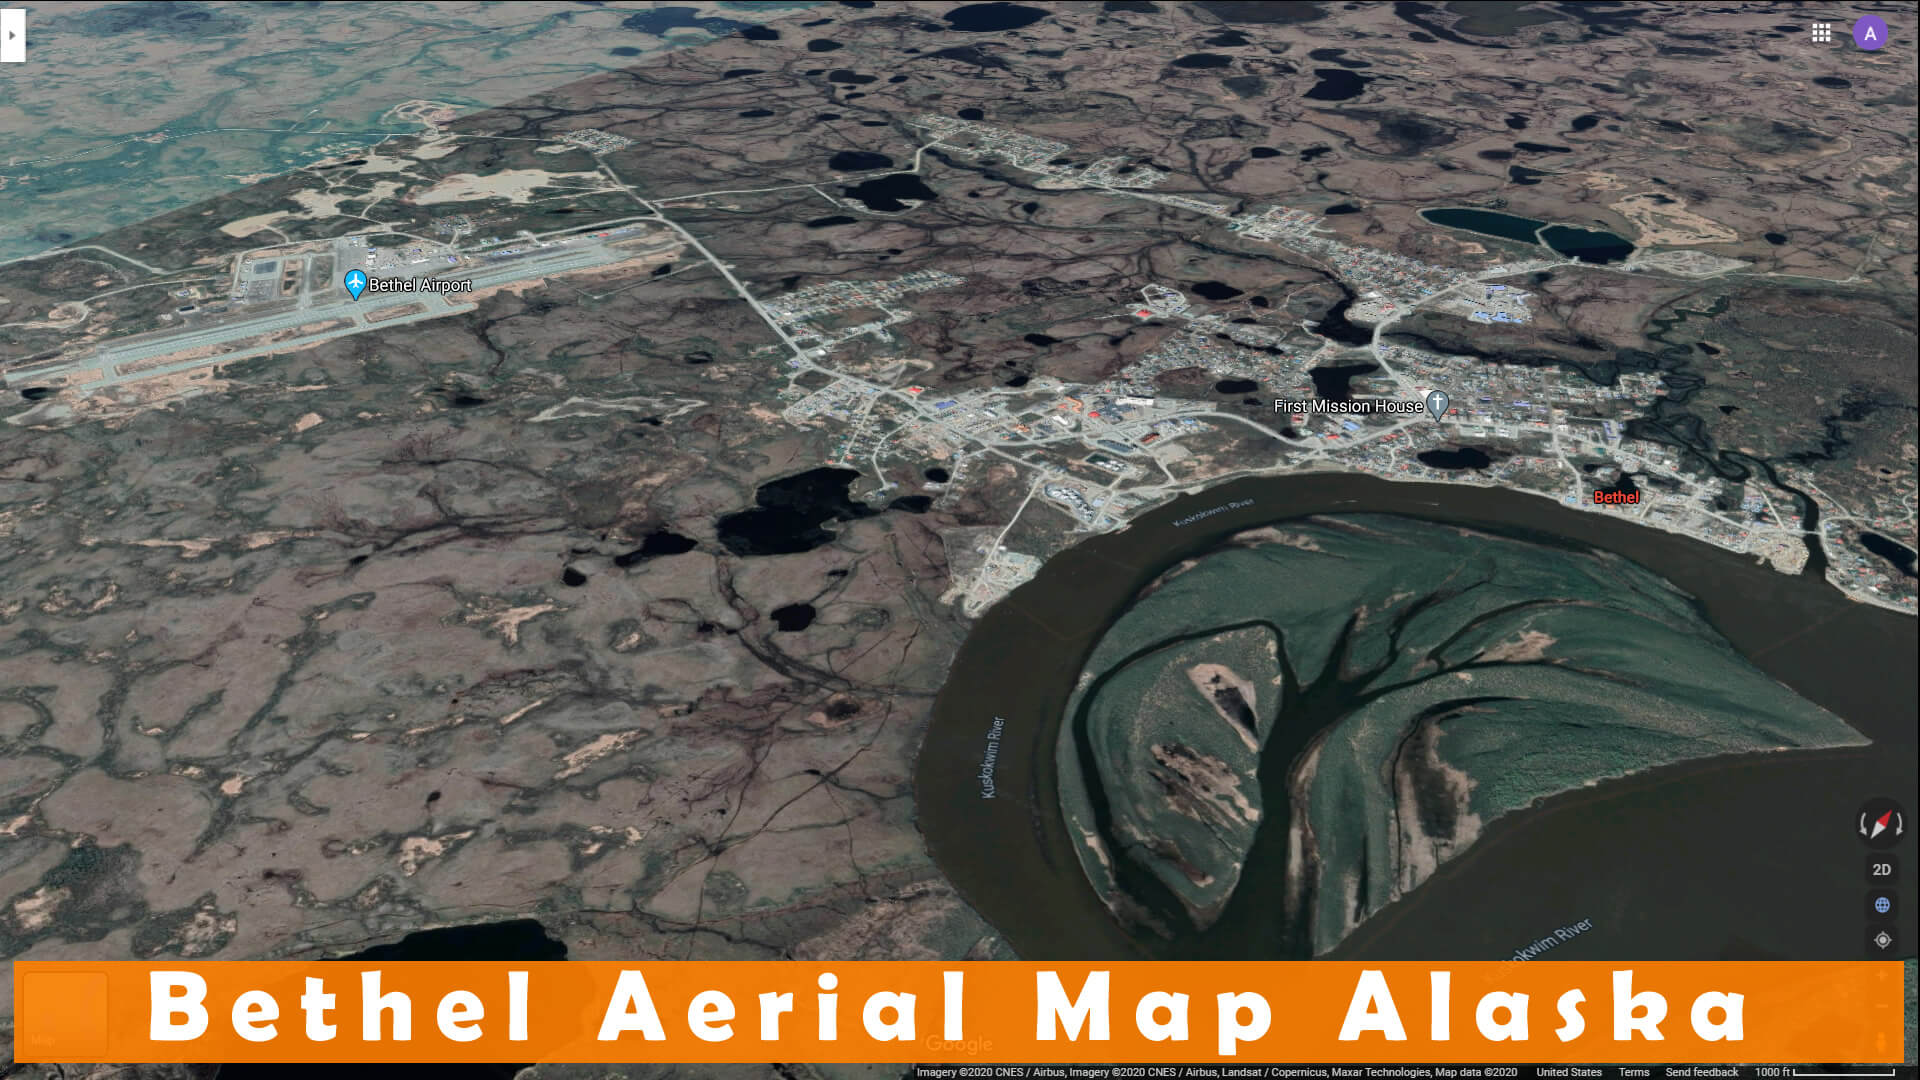 Bethel Aerial Map Alaska